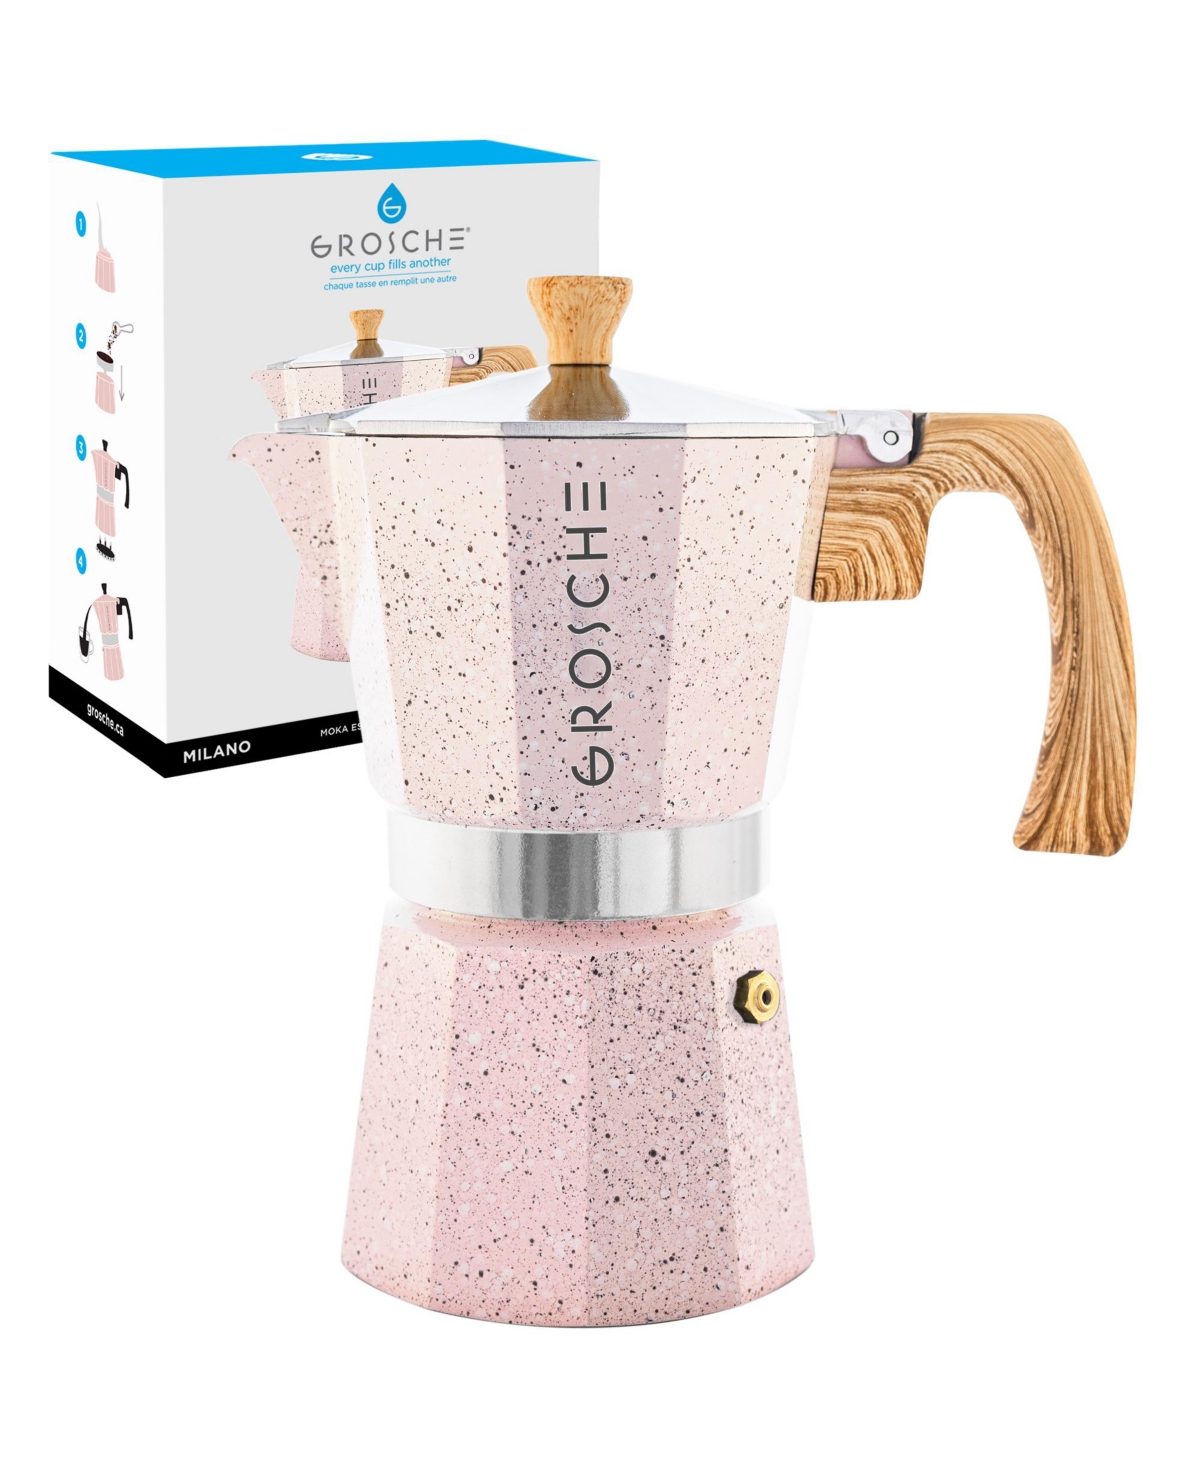 Grosche Milano Stone Stovetop Espresso Maker Moka Pot 12 Cup, 23.6 oz In Blush Pink